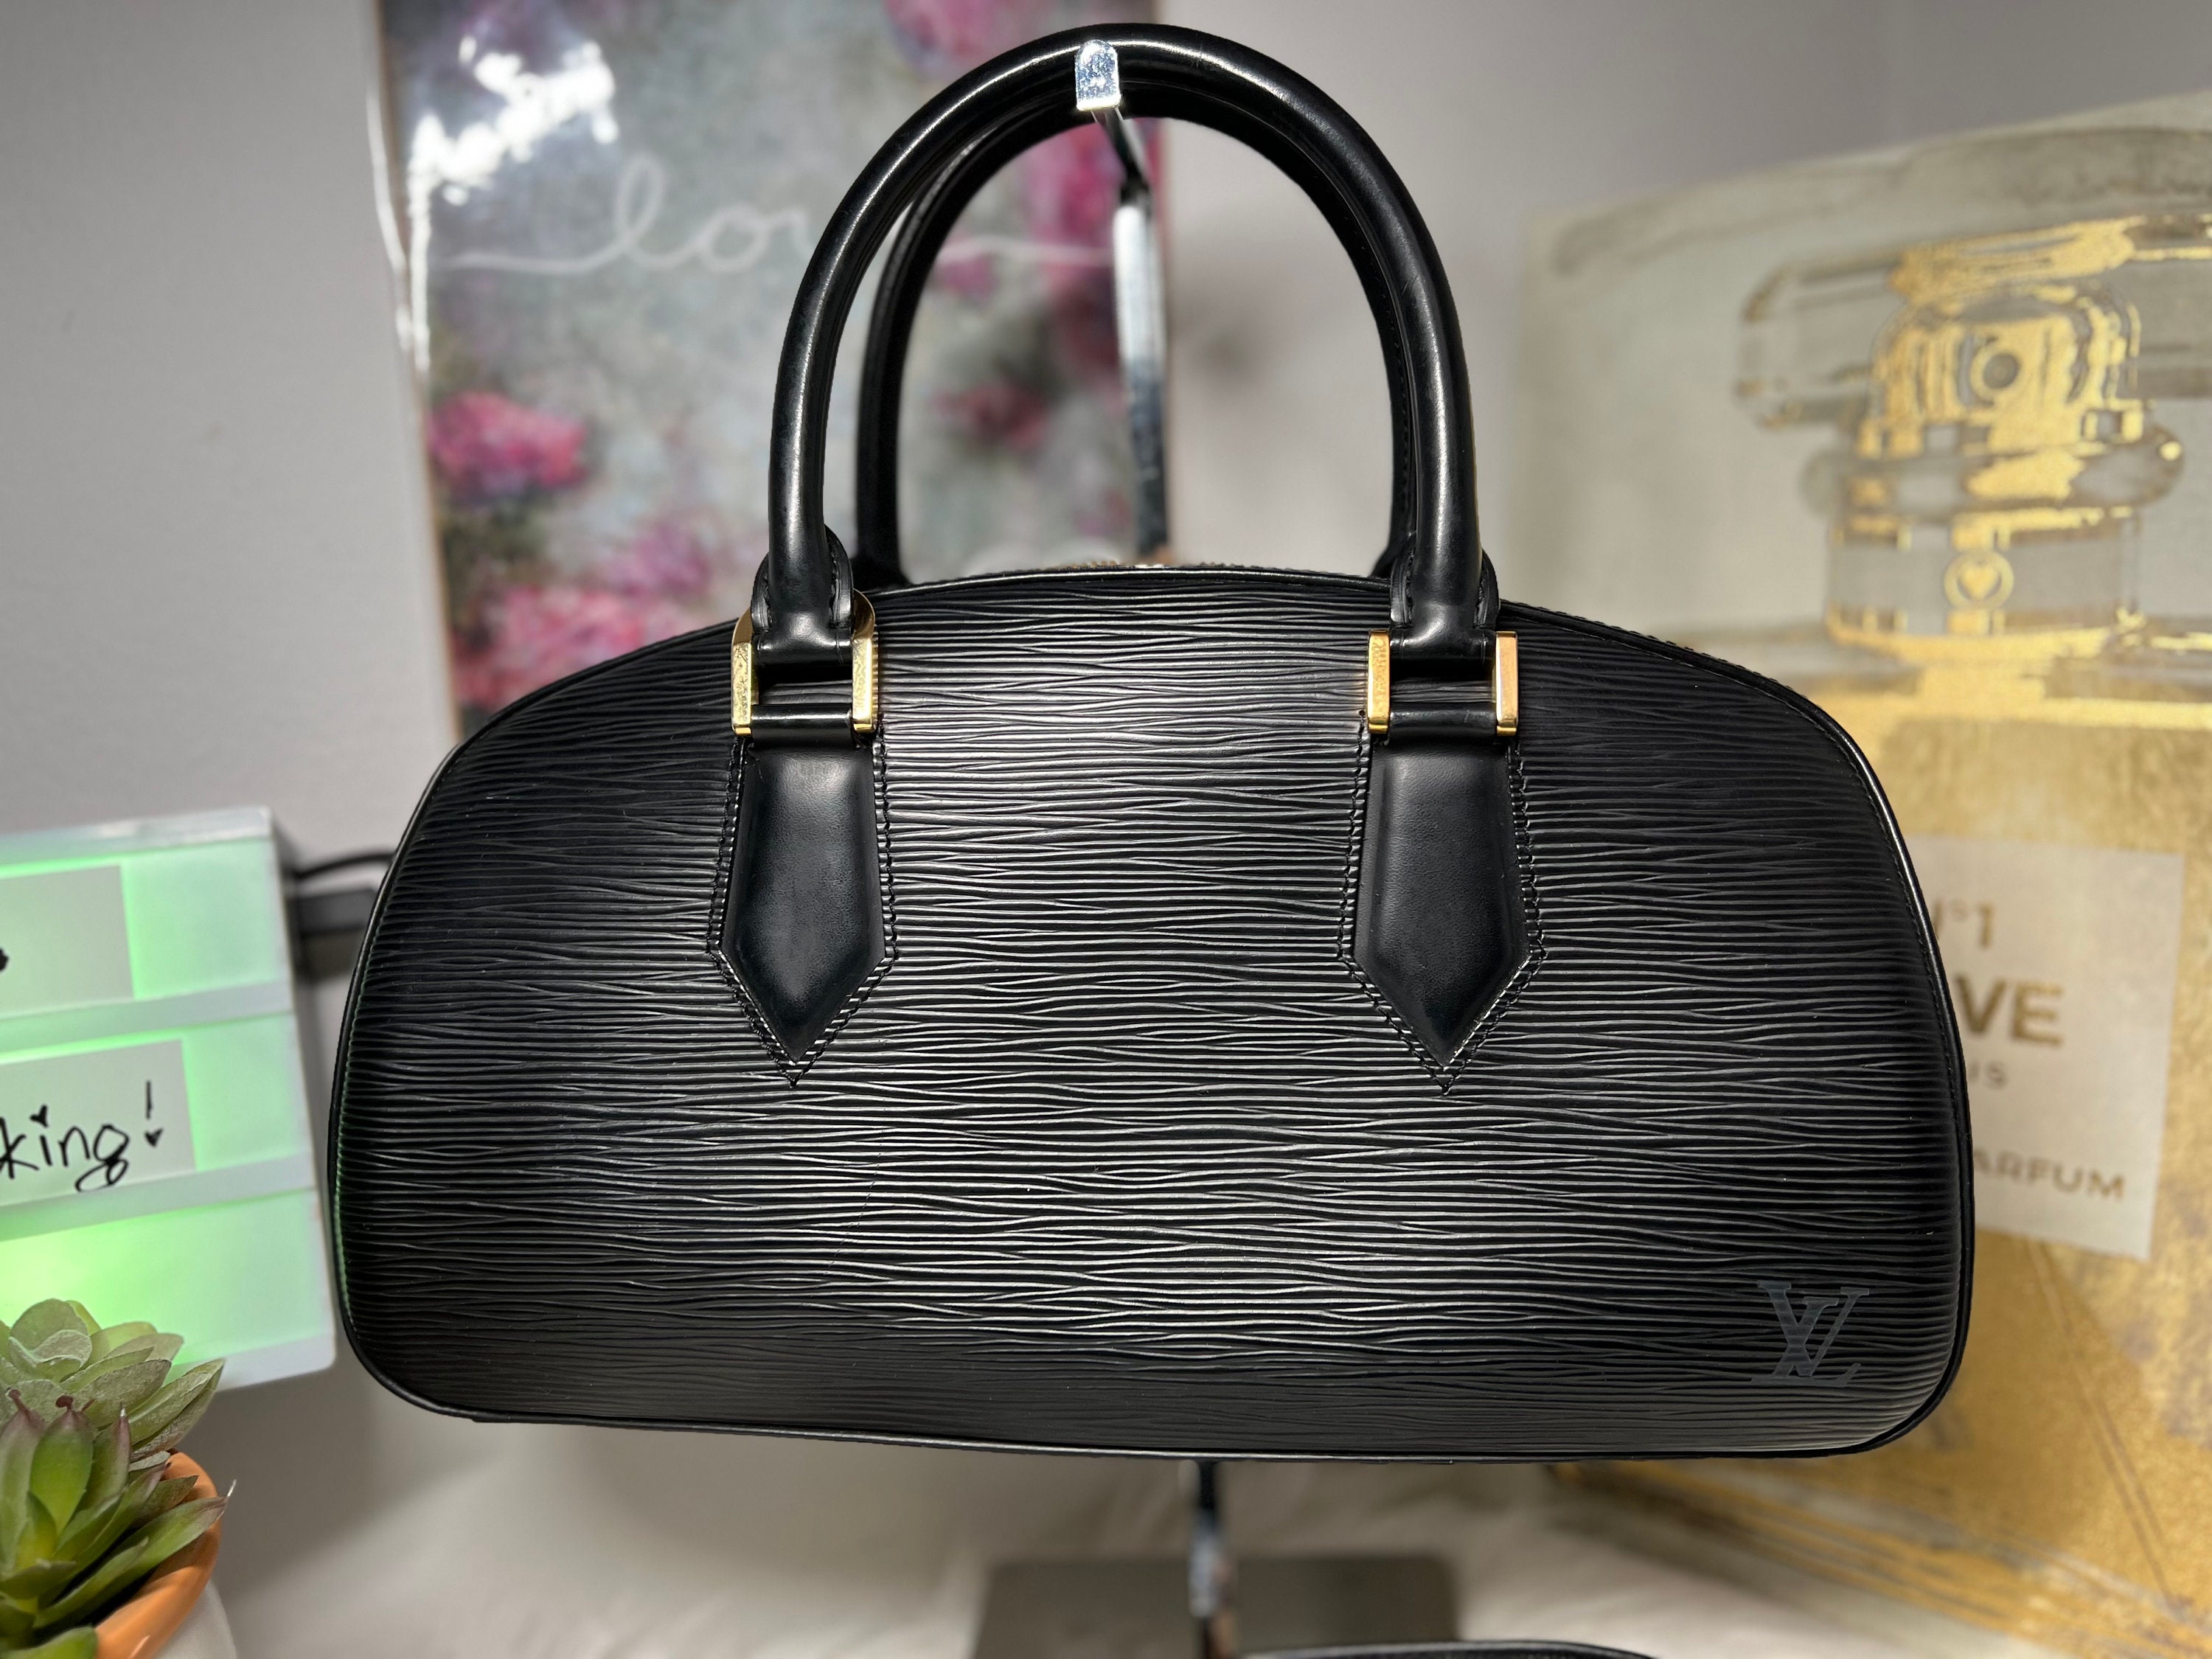 Louis Vuitton Rivets Chain Wallet Epi LV Circle Black in Epi